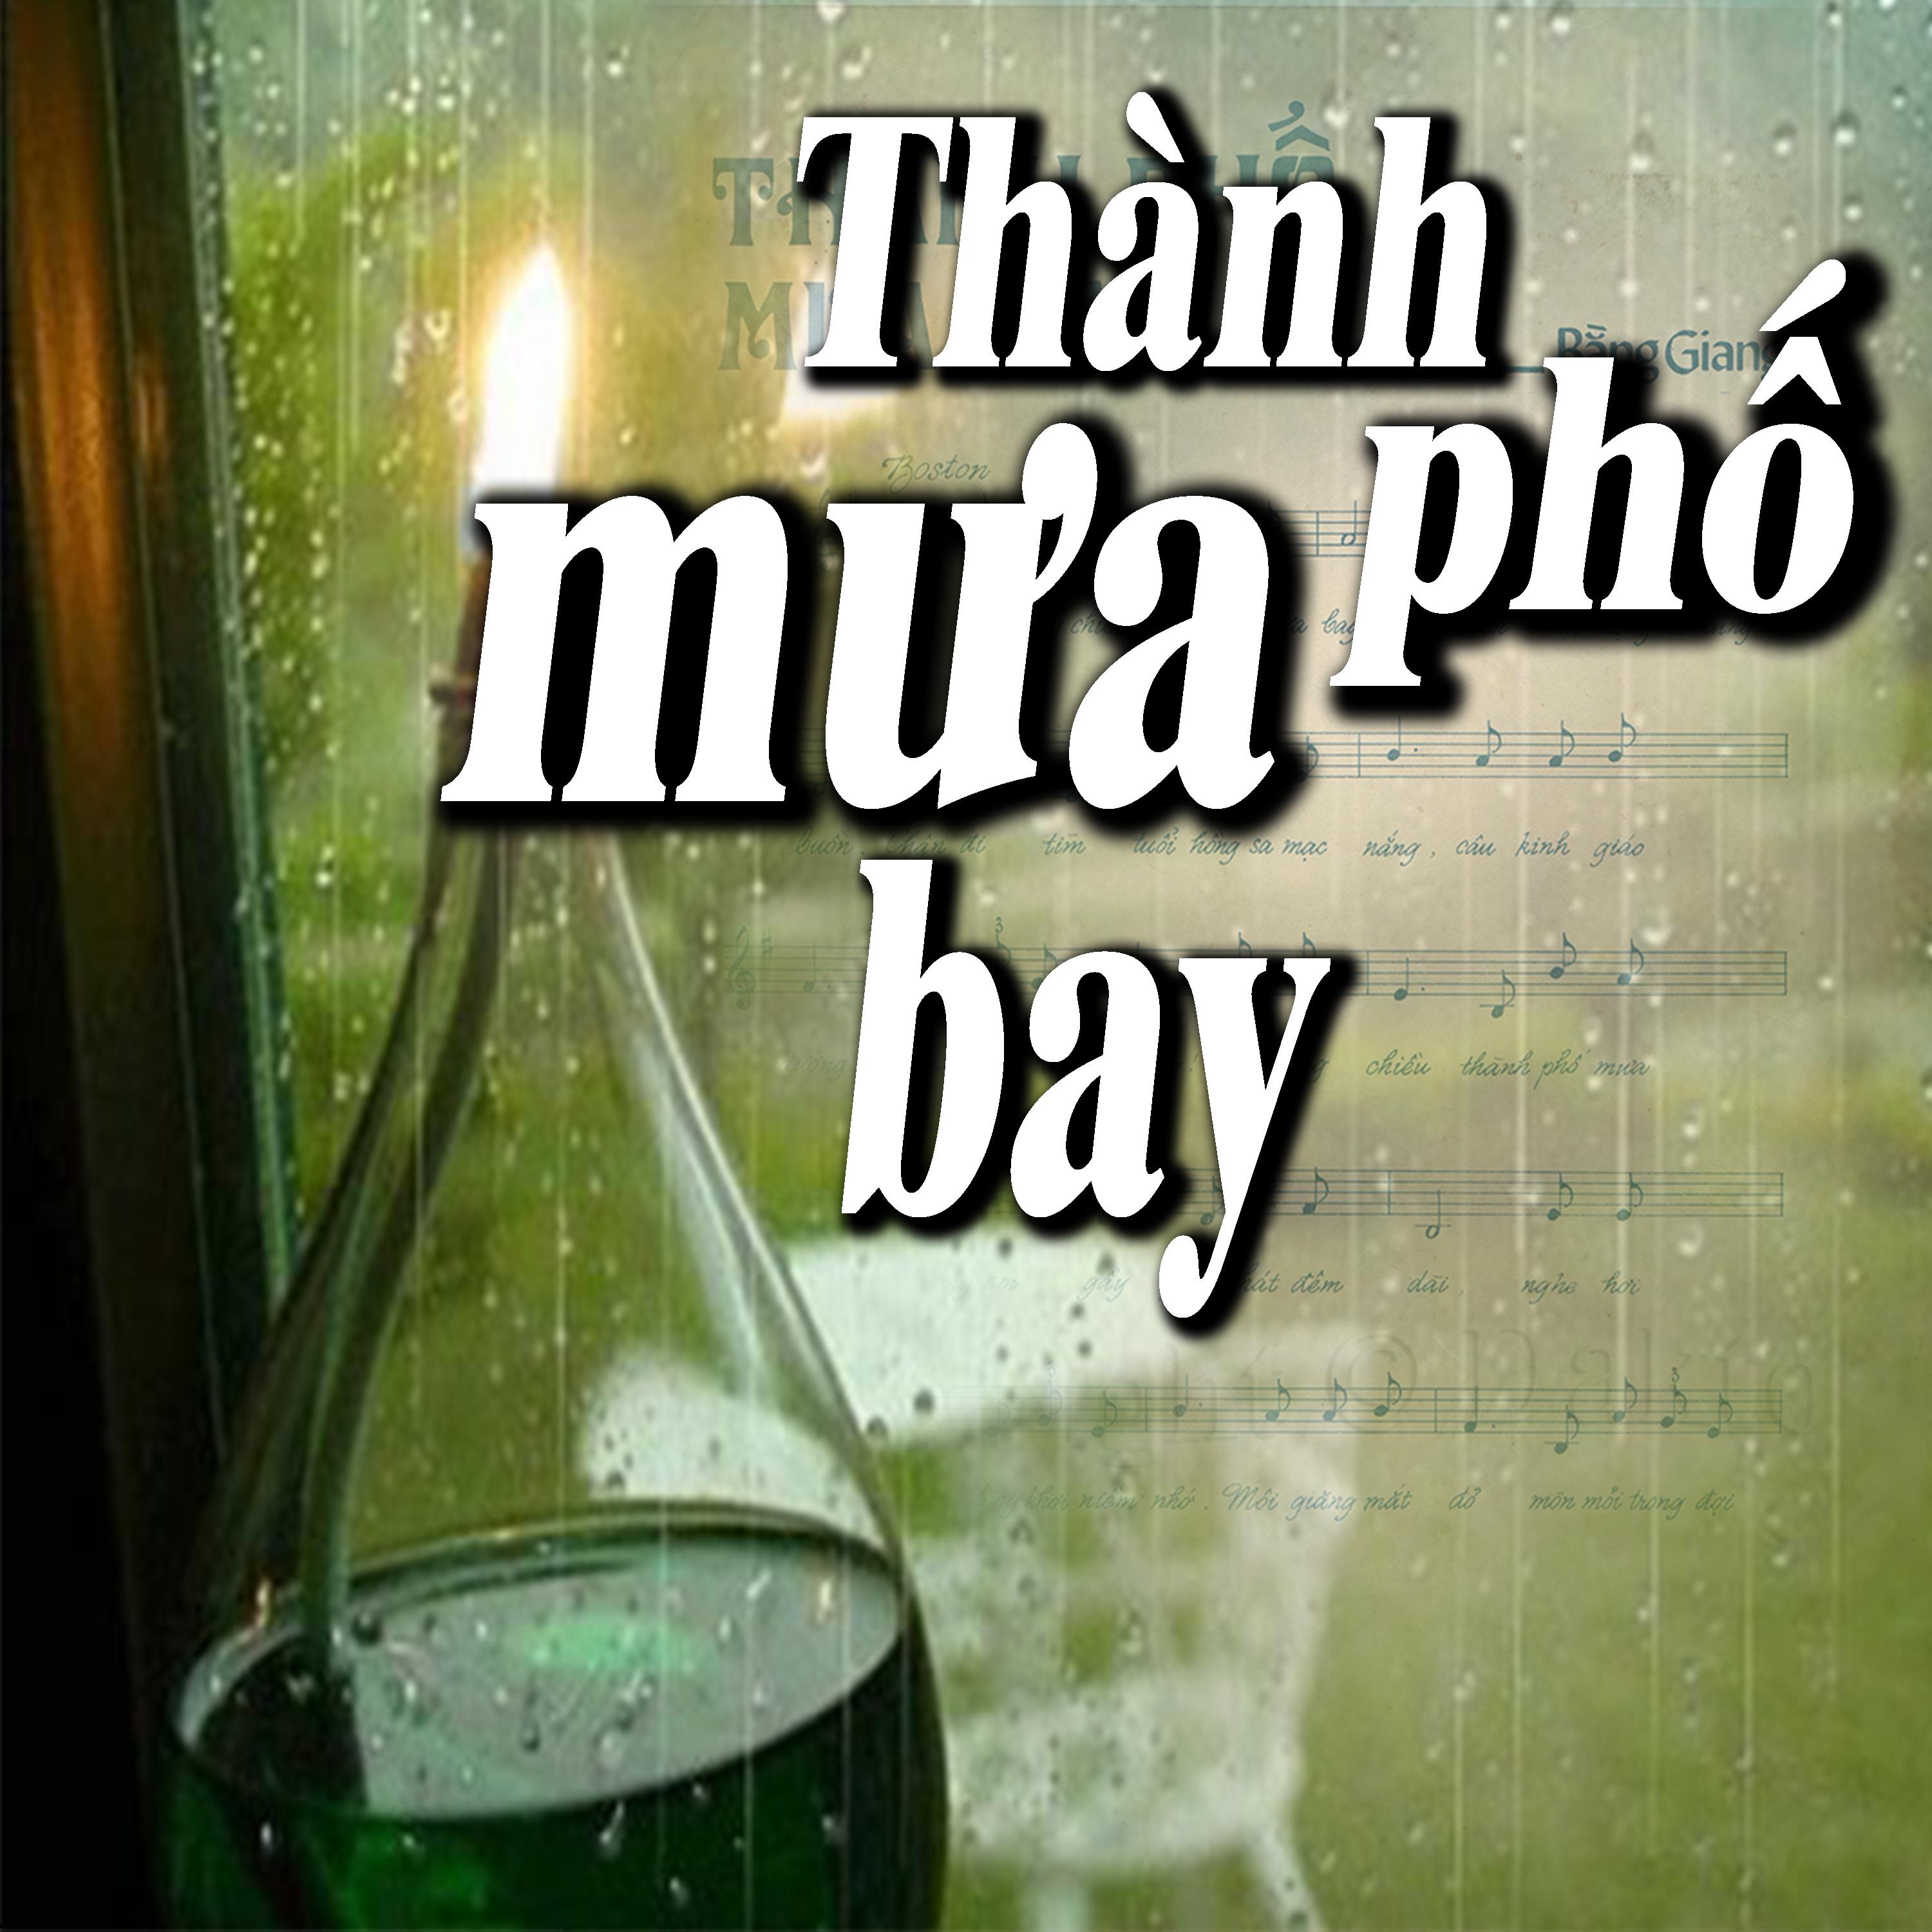 Tha nh Ph M a Bay